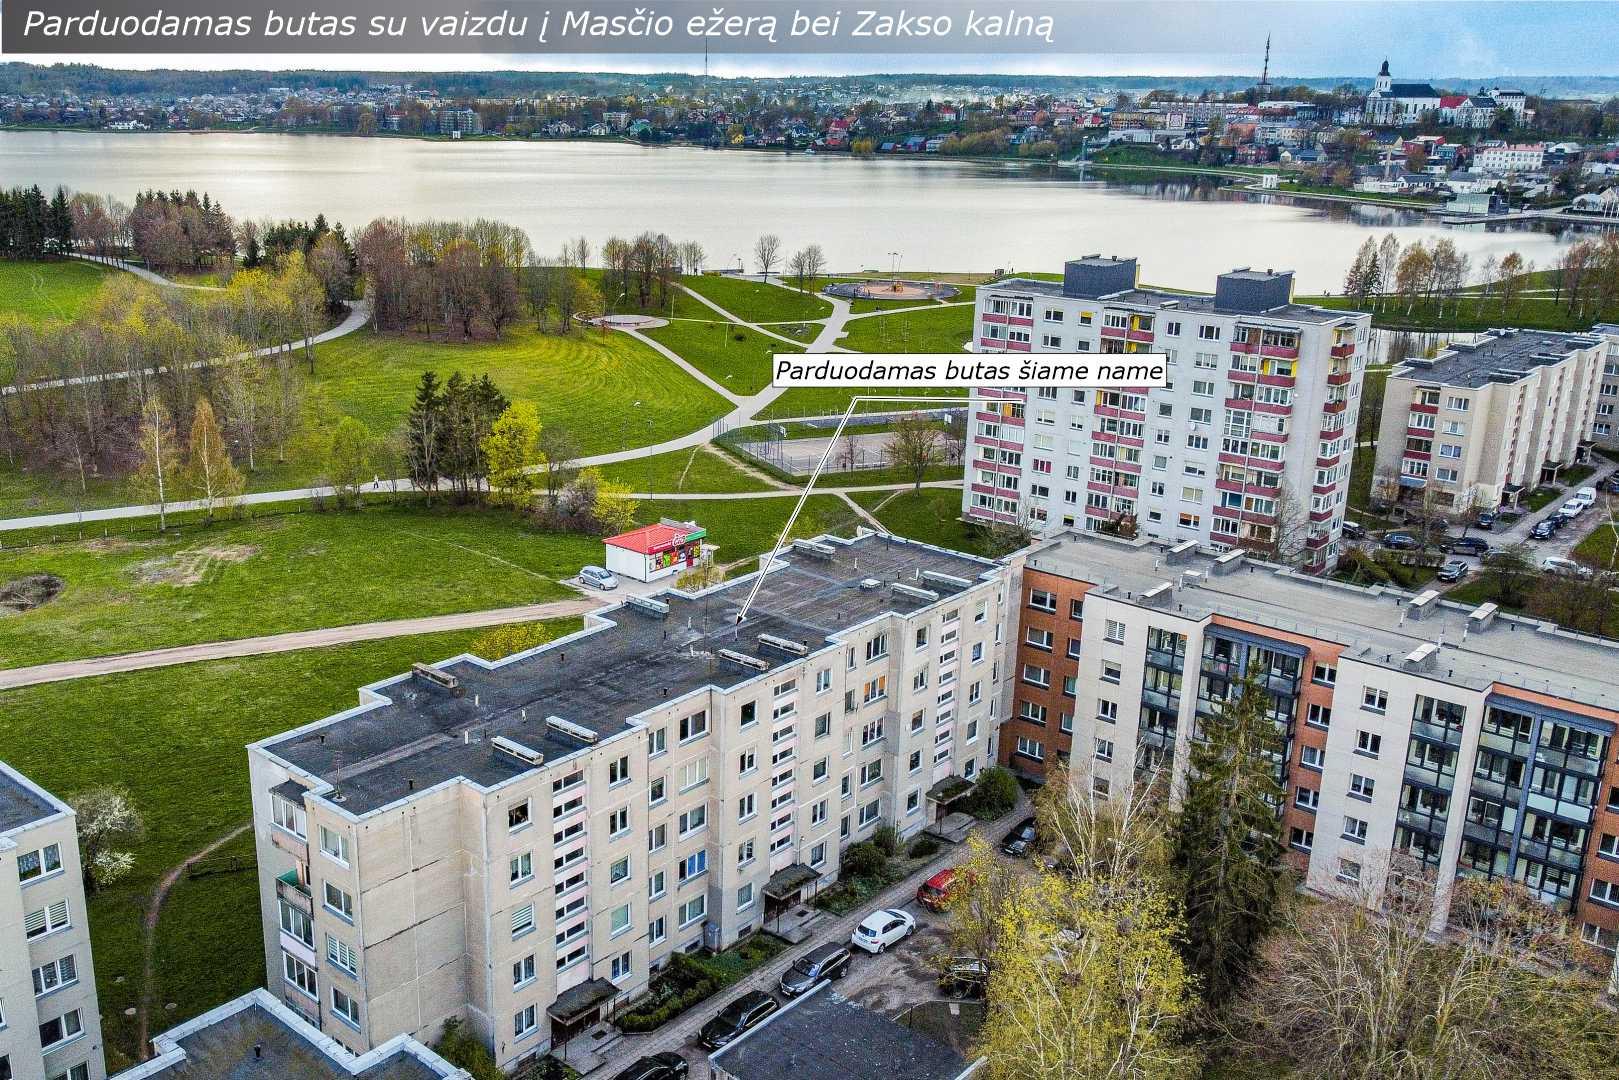 Parduodamas 2 kambarių butas su vaizdu į Masčio ežerą bei Zakso kalną, Telšiuose, Vilniaus g. 28